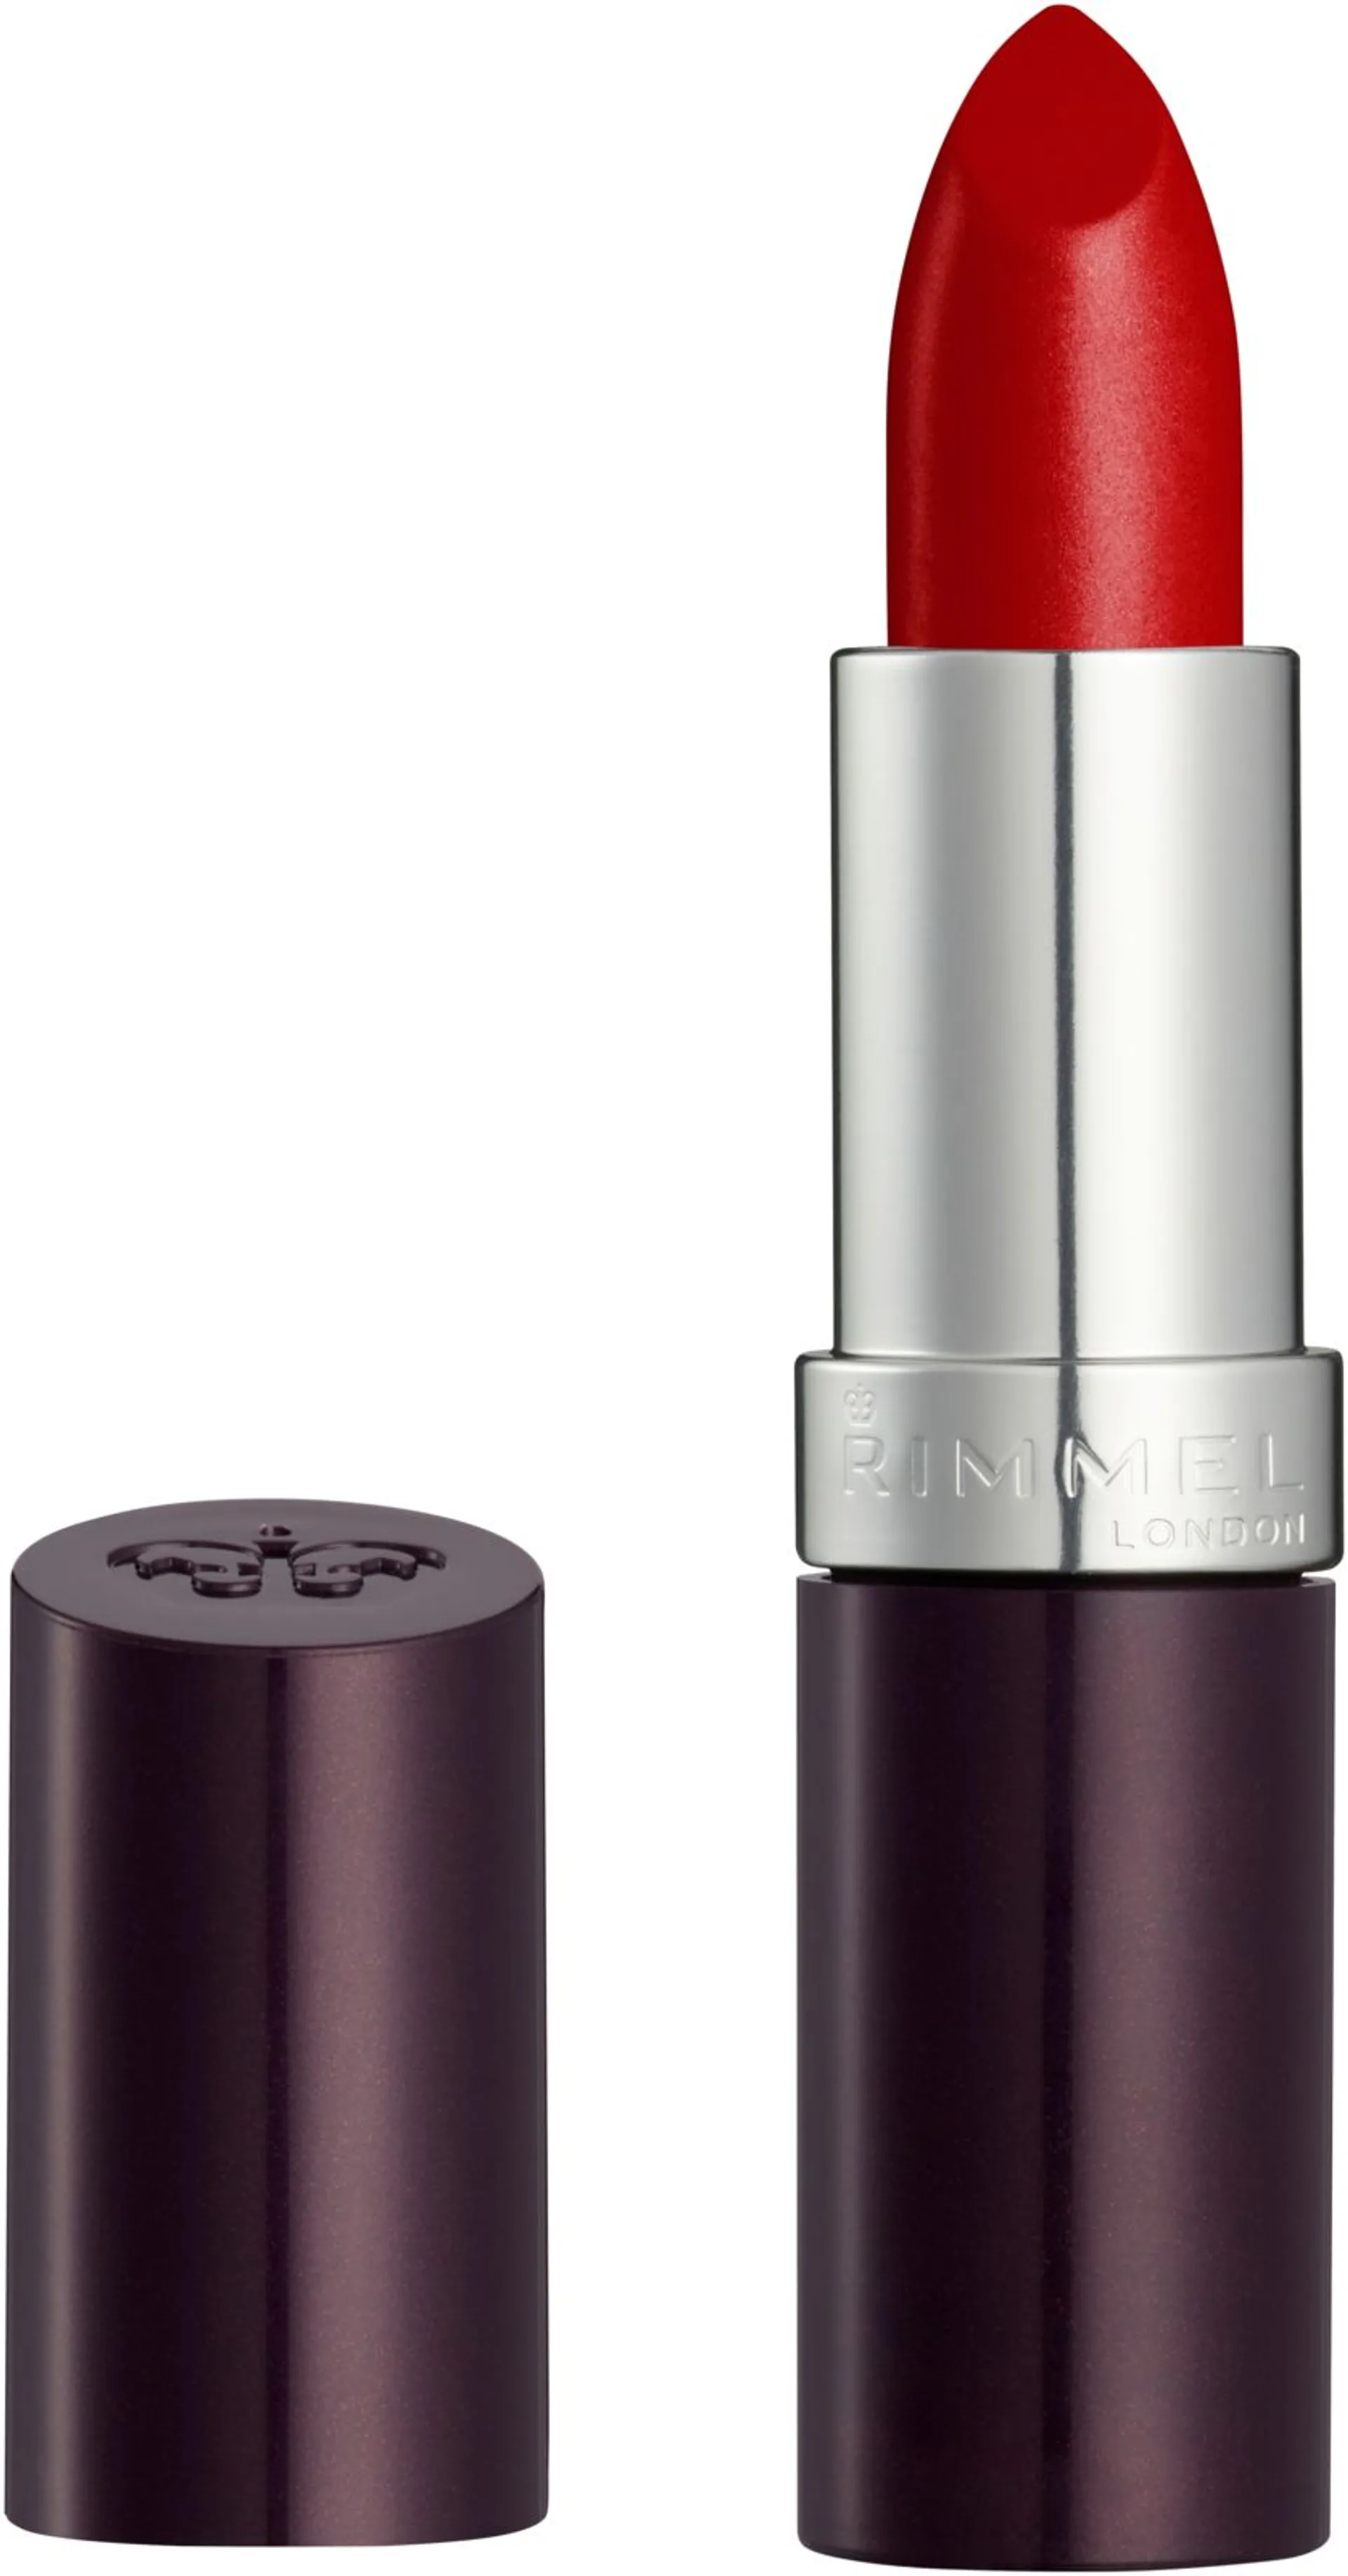 Rimmel 4g Lasting Finish Lipstick 170 Alarm huulipuna - 2